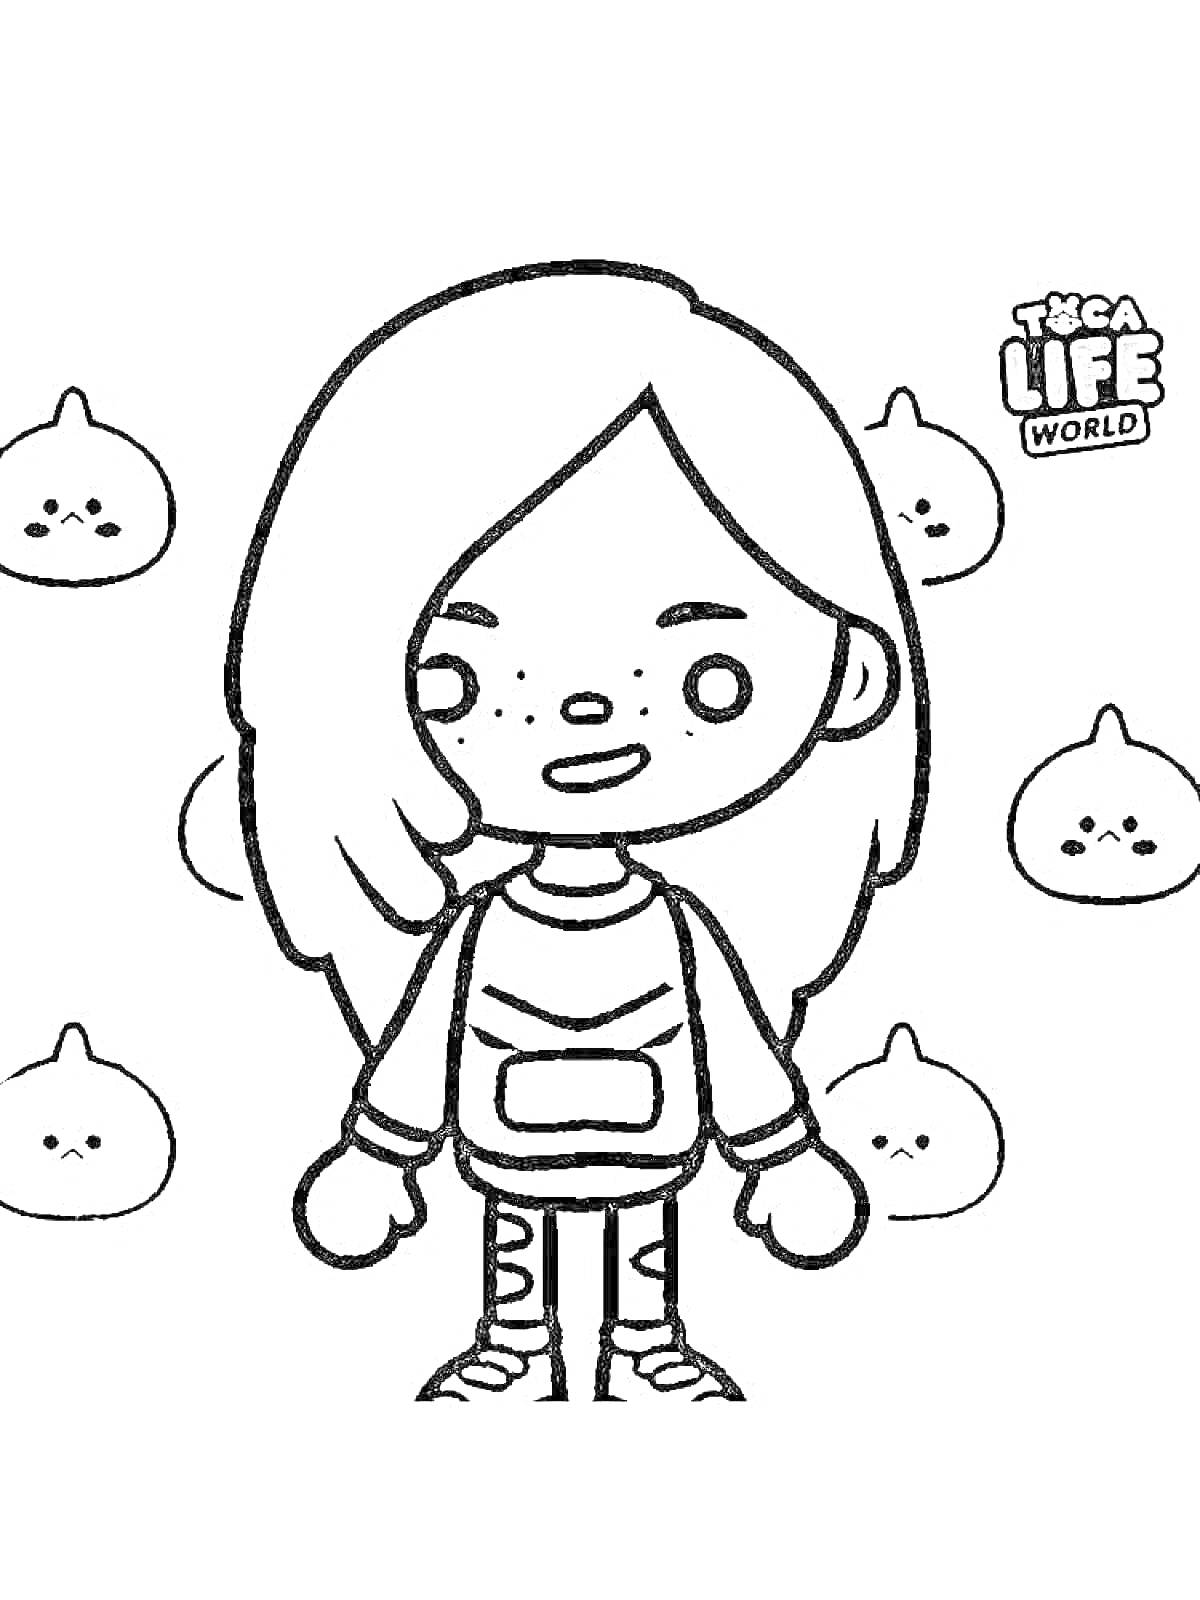 Раскраска Девочка с длинными волосами и рюкзаком, на фоне персонажей Toca Life World